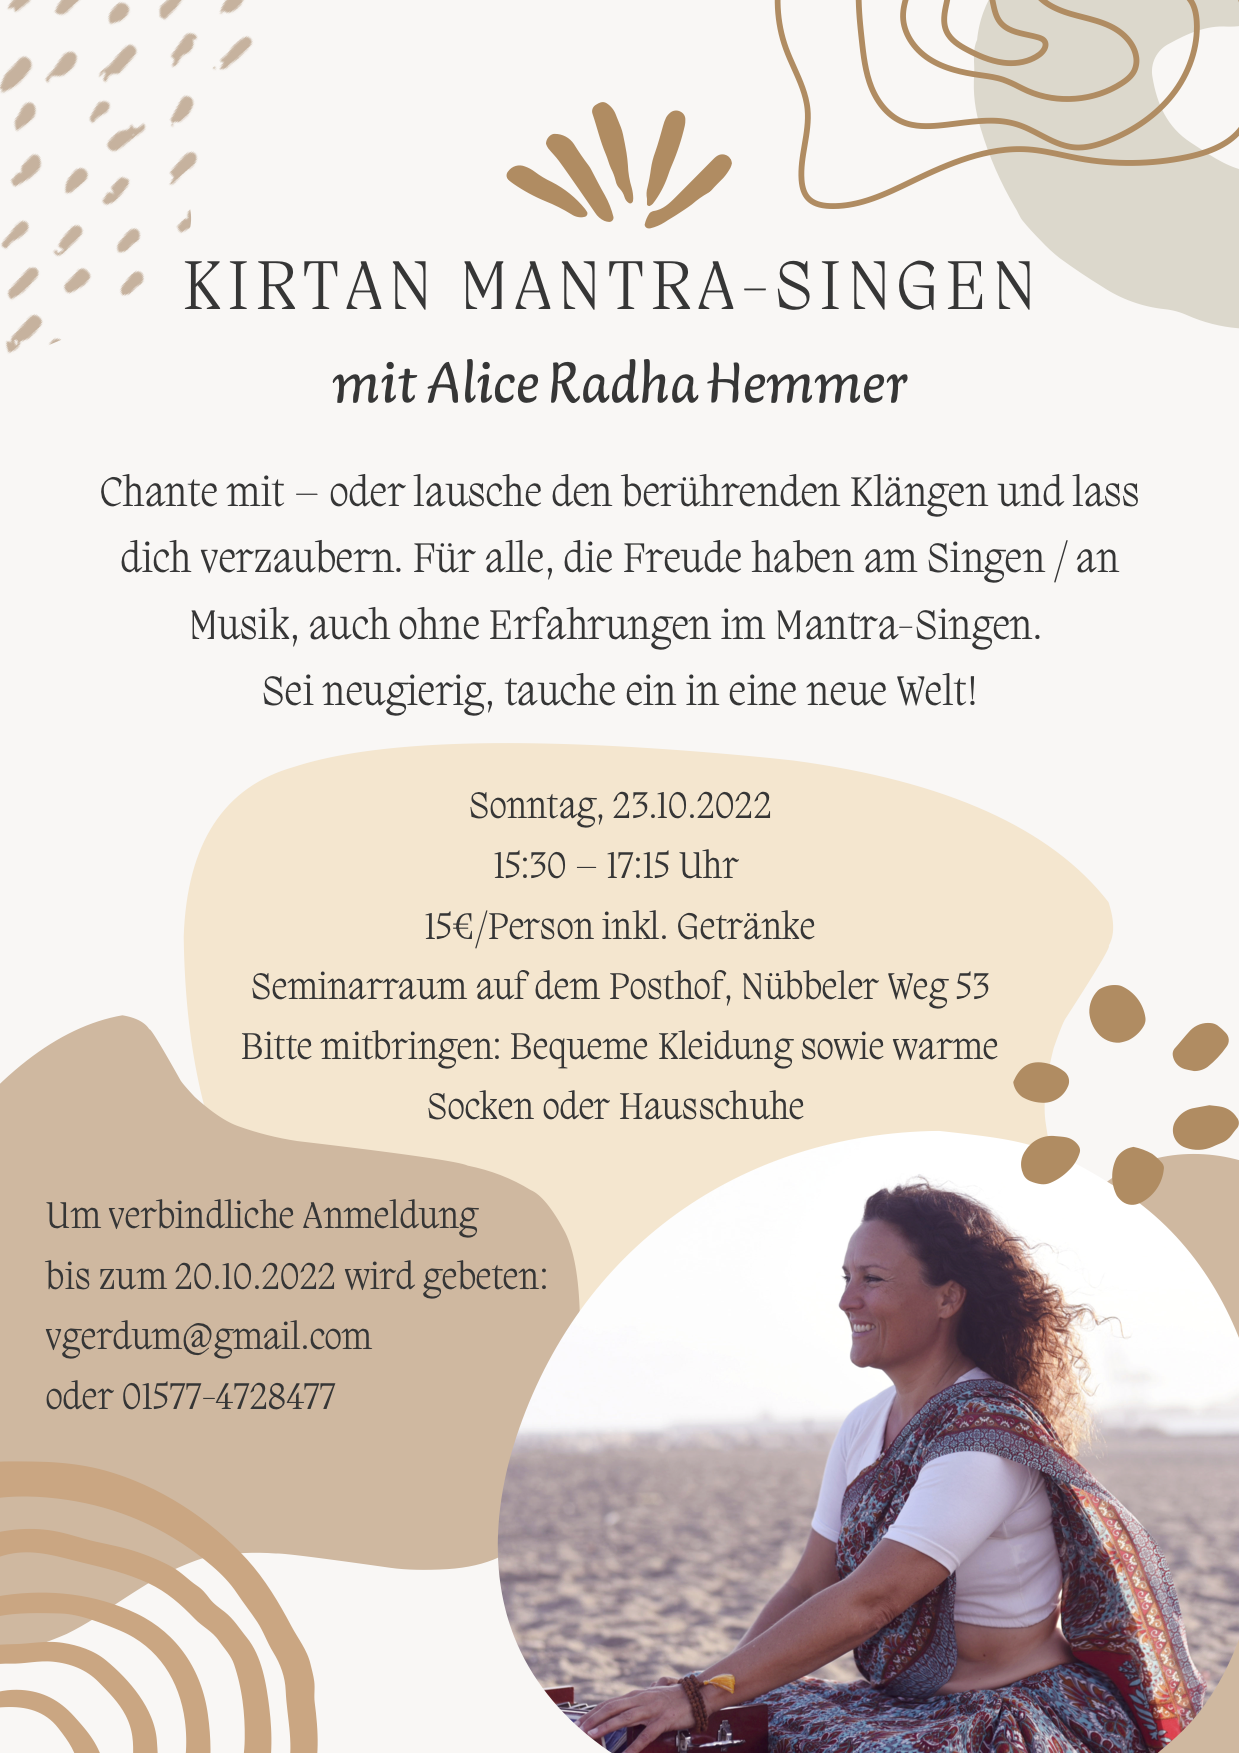 Kirtan-Mantra singen